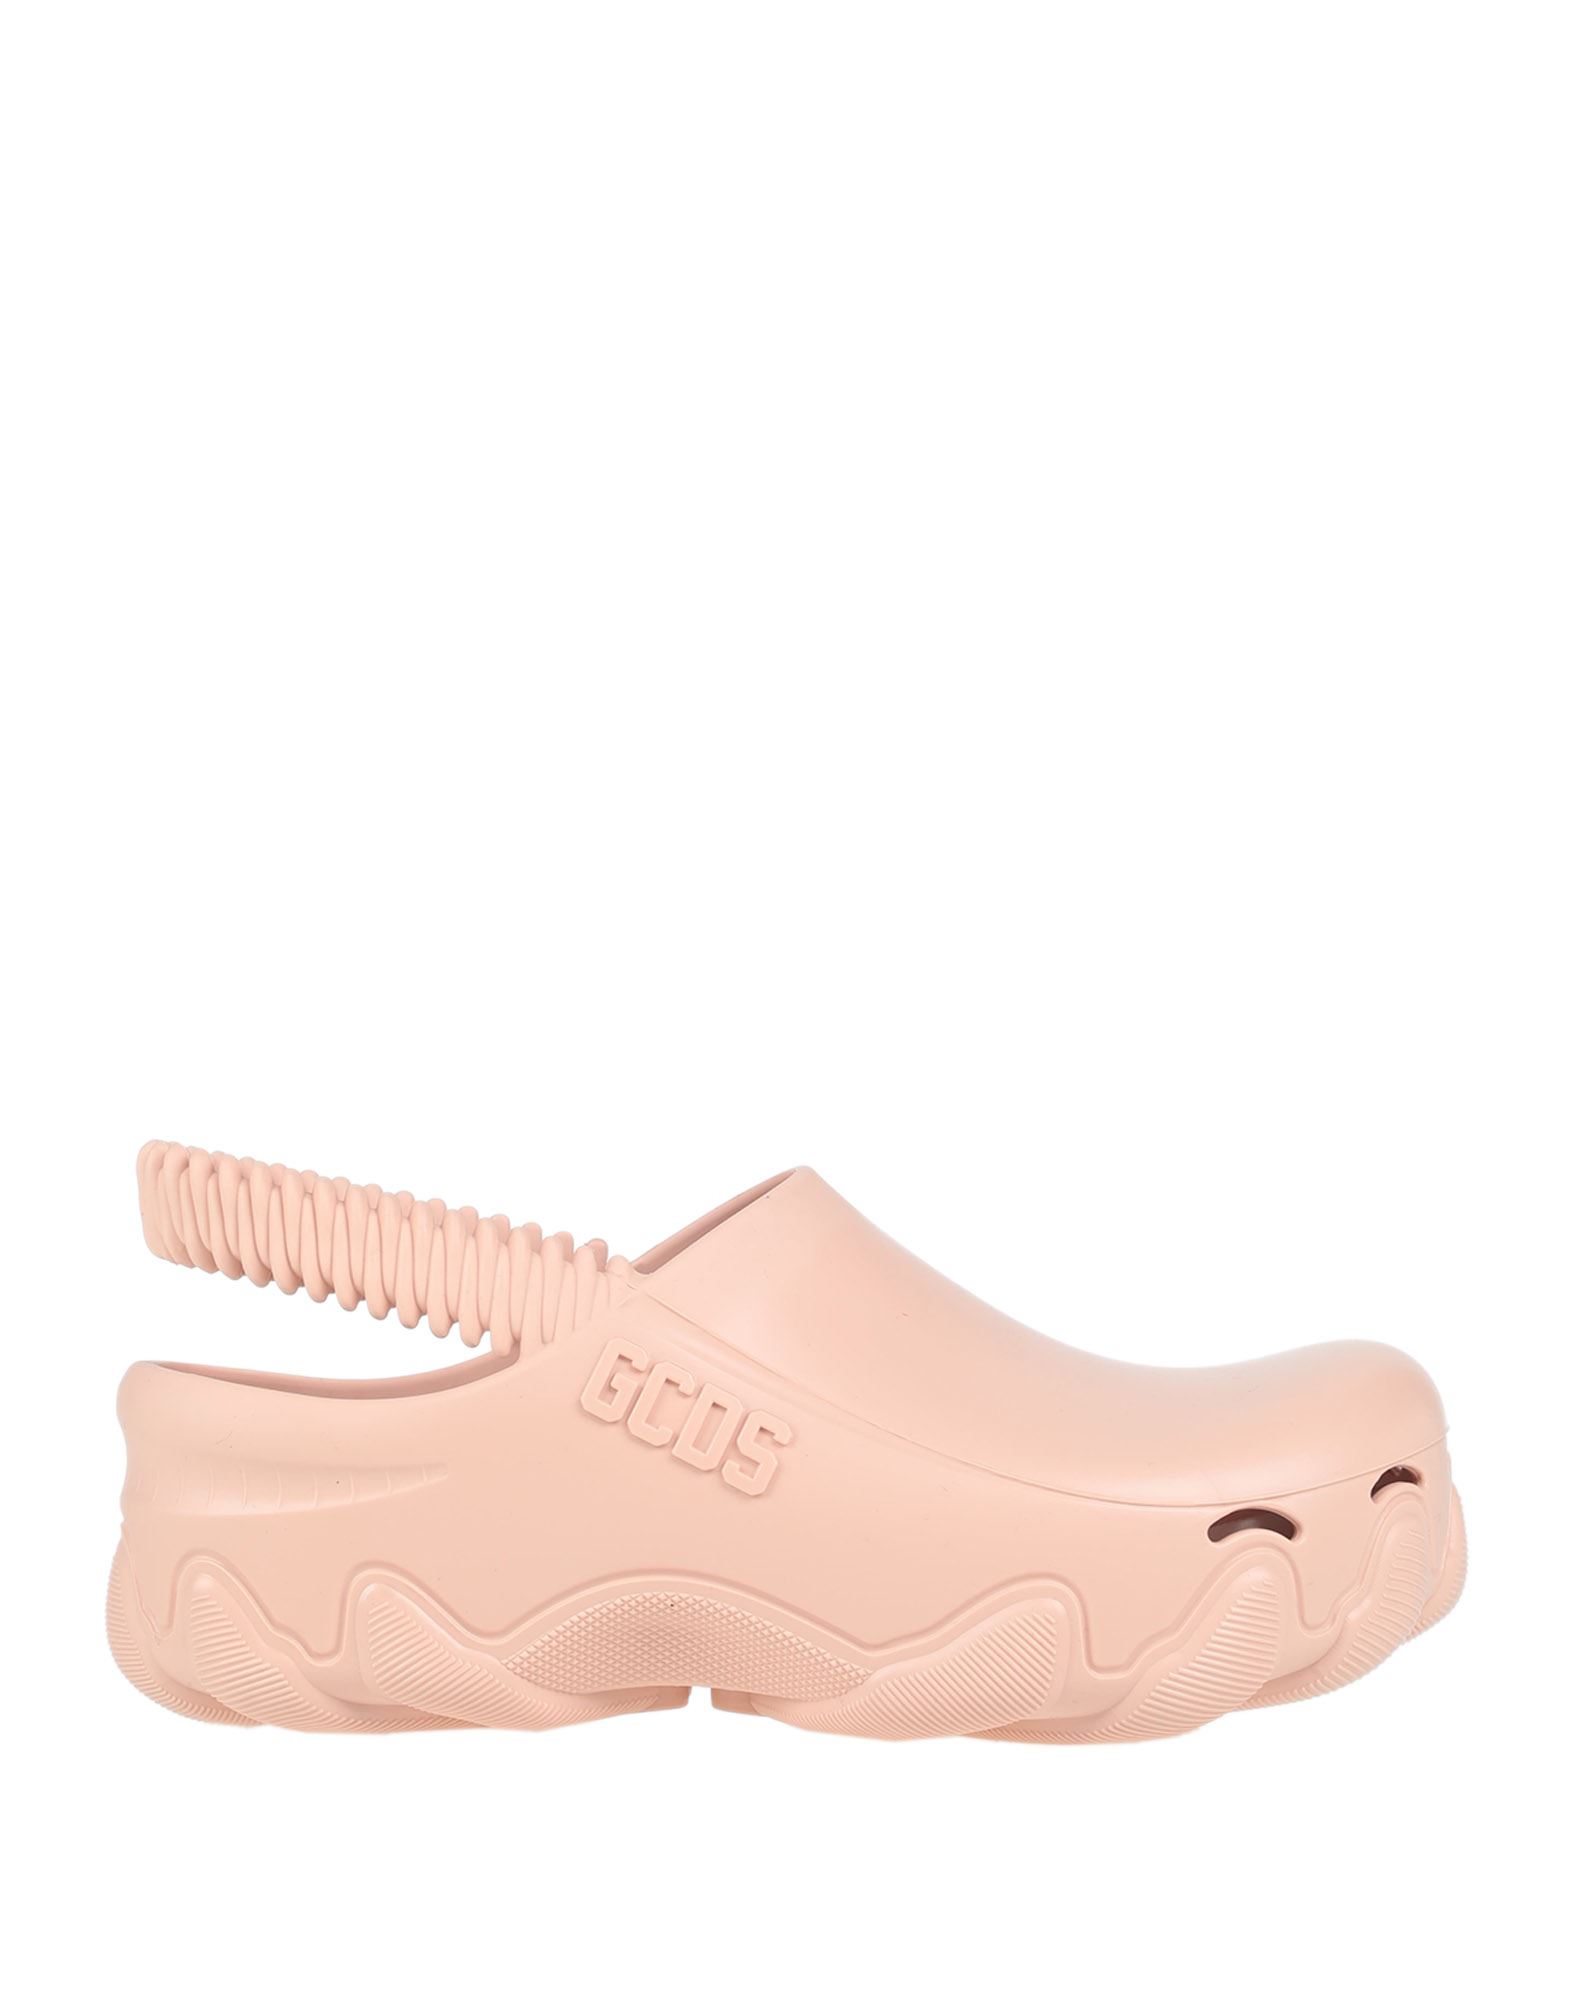 Shop Gcds Woman Mules & Clogs Light Pink Size 8 Rubber